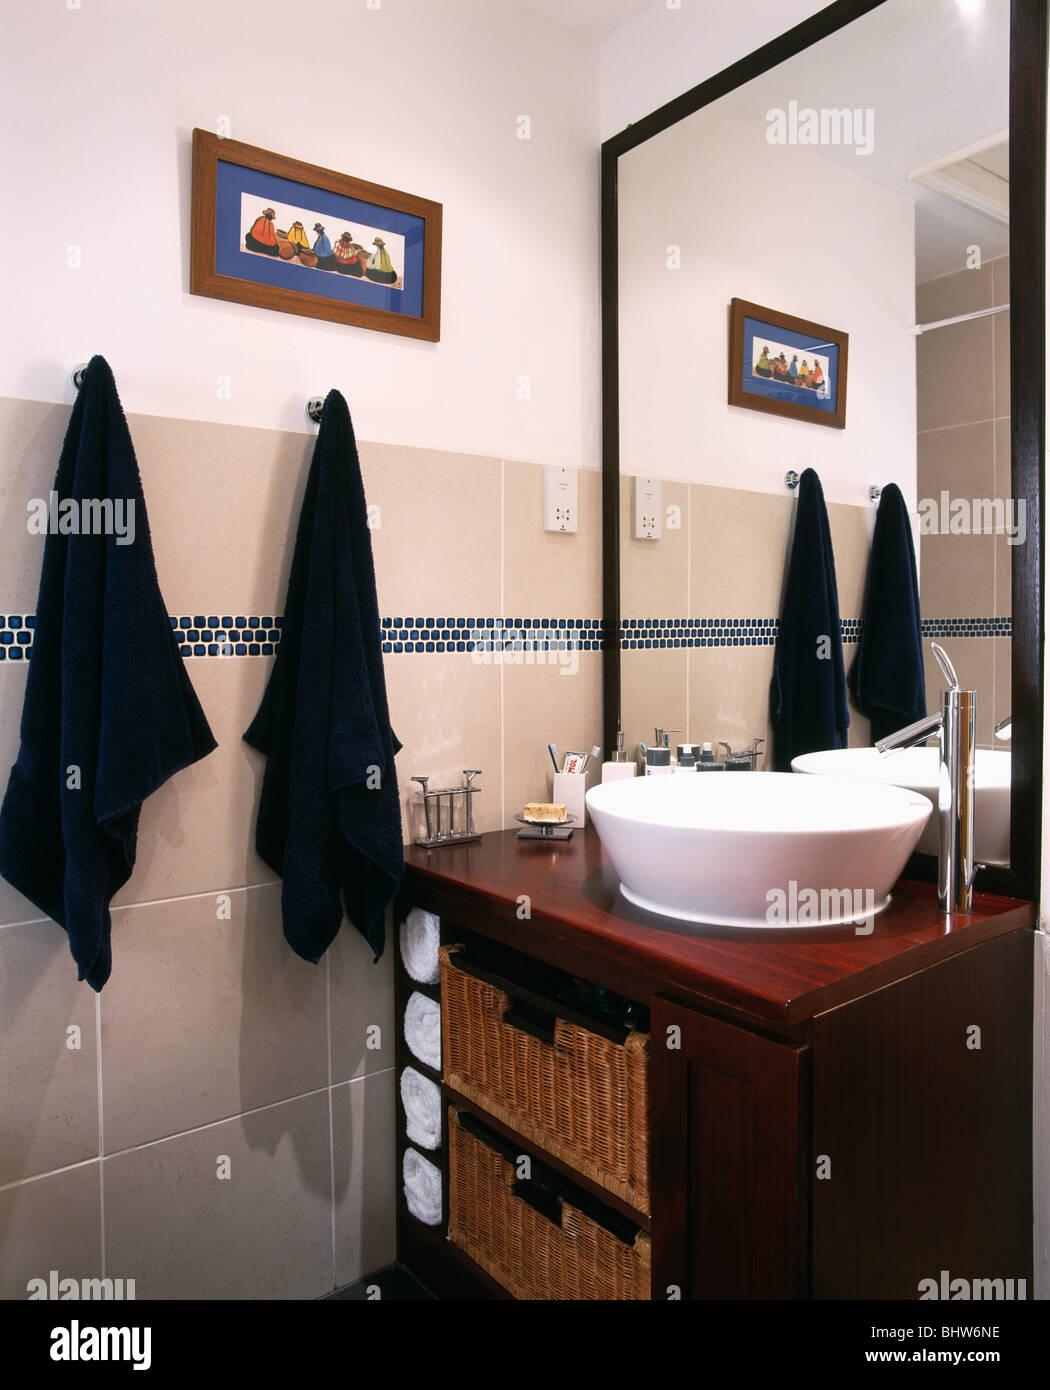 Toallas negras en ganchos al lado de cuenca en blanco debajo de la unidad  de vanidad de madera espejo montado en un cuarto de baño moderno Fotografía  de stock - Alamy